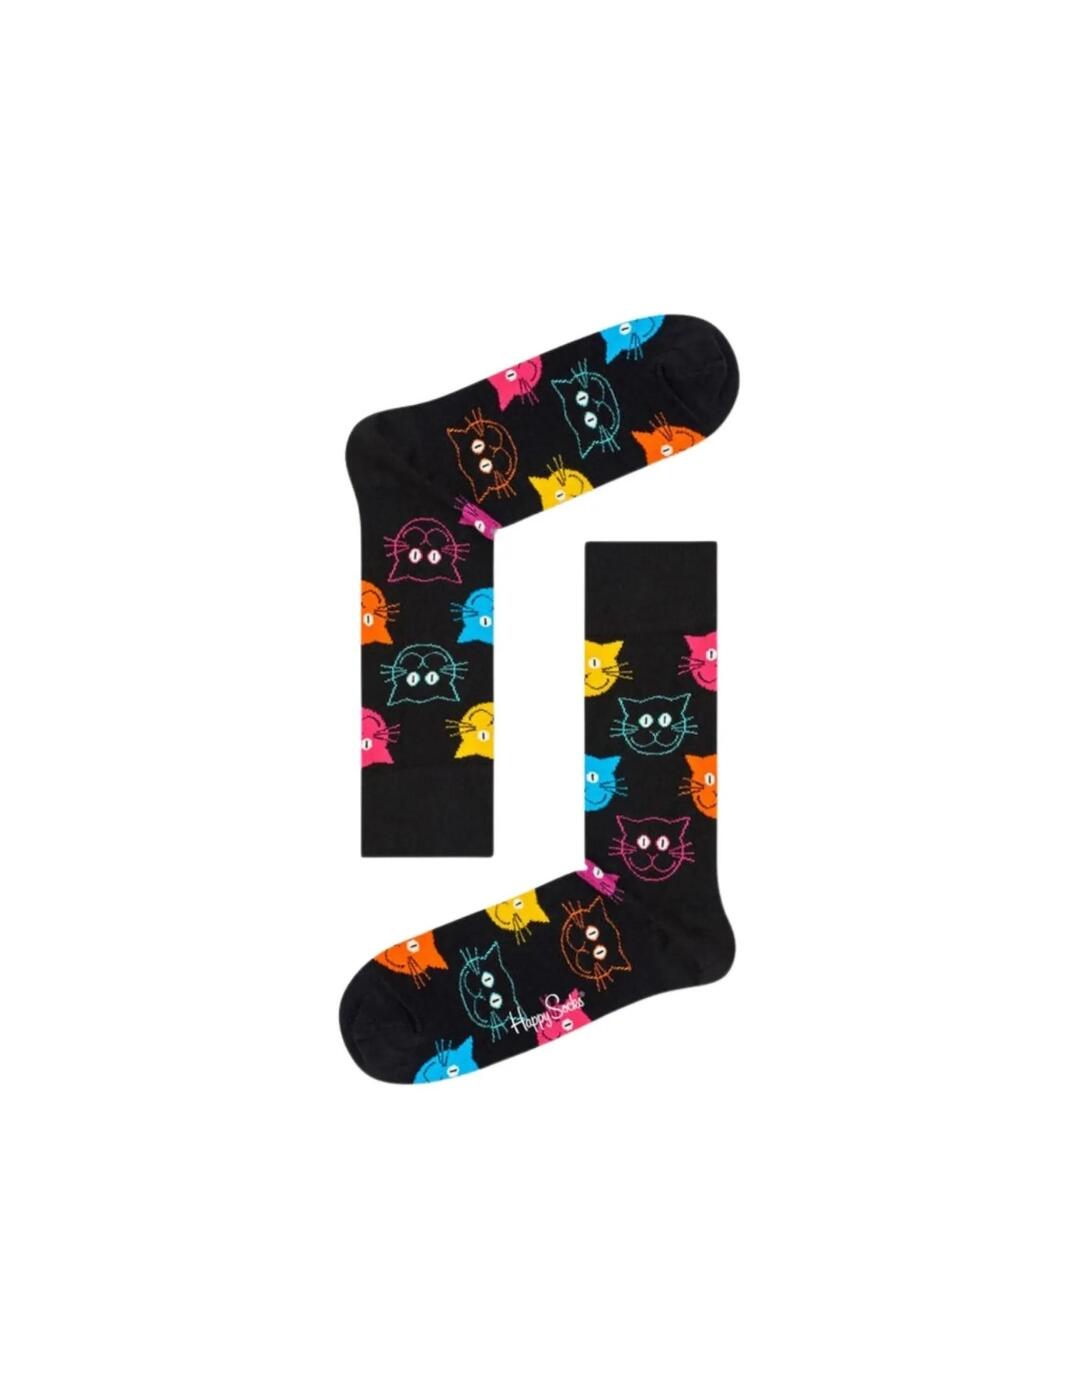 MJA01-9001 Happy Socks Cat Socks - MJA01-9001 Black